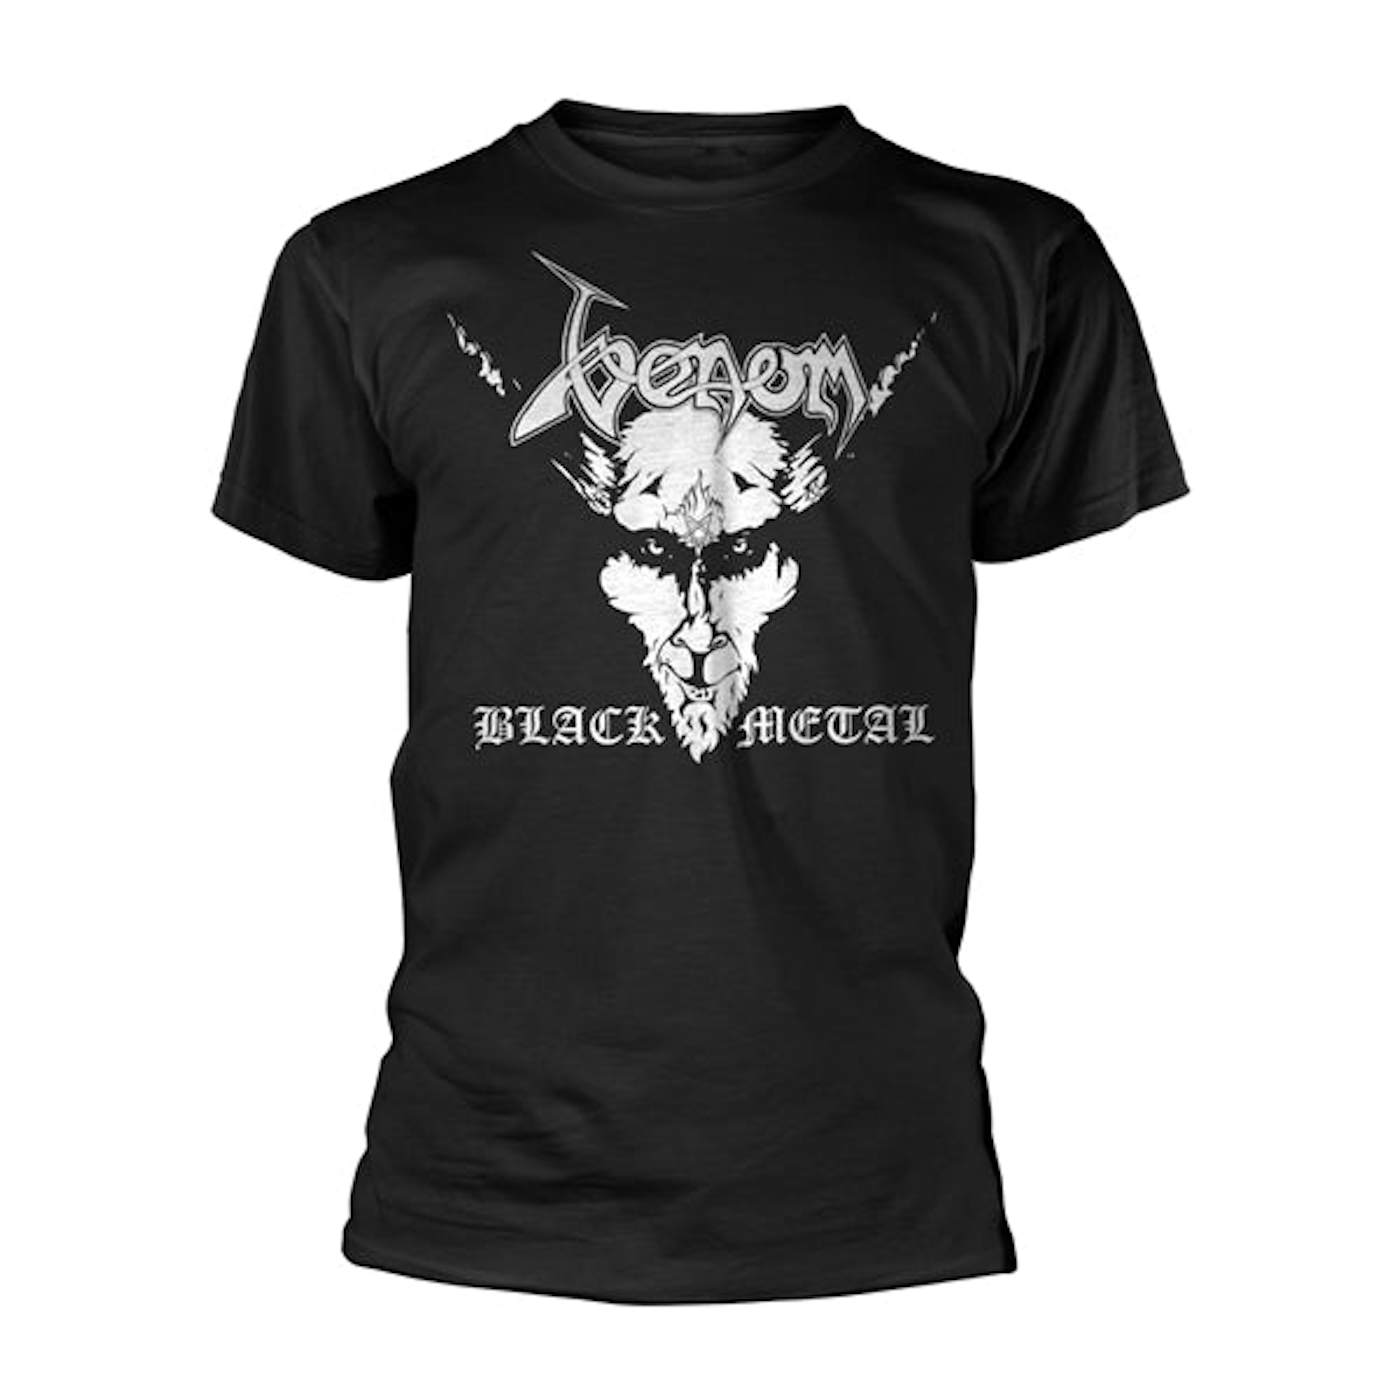  Venom T Shirt - Black Metal (White)